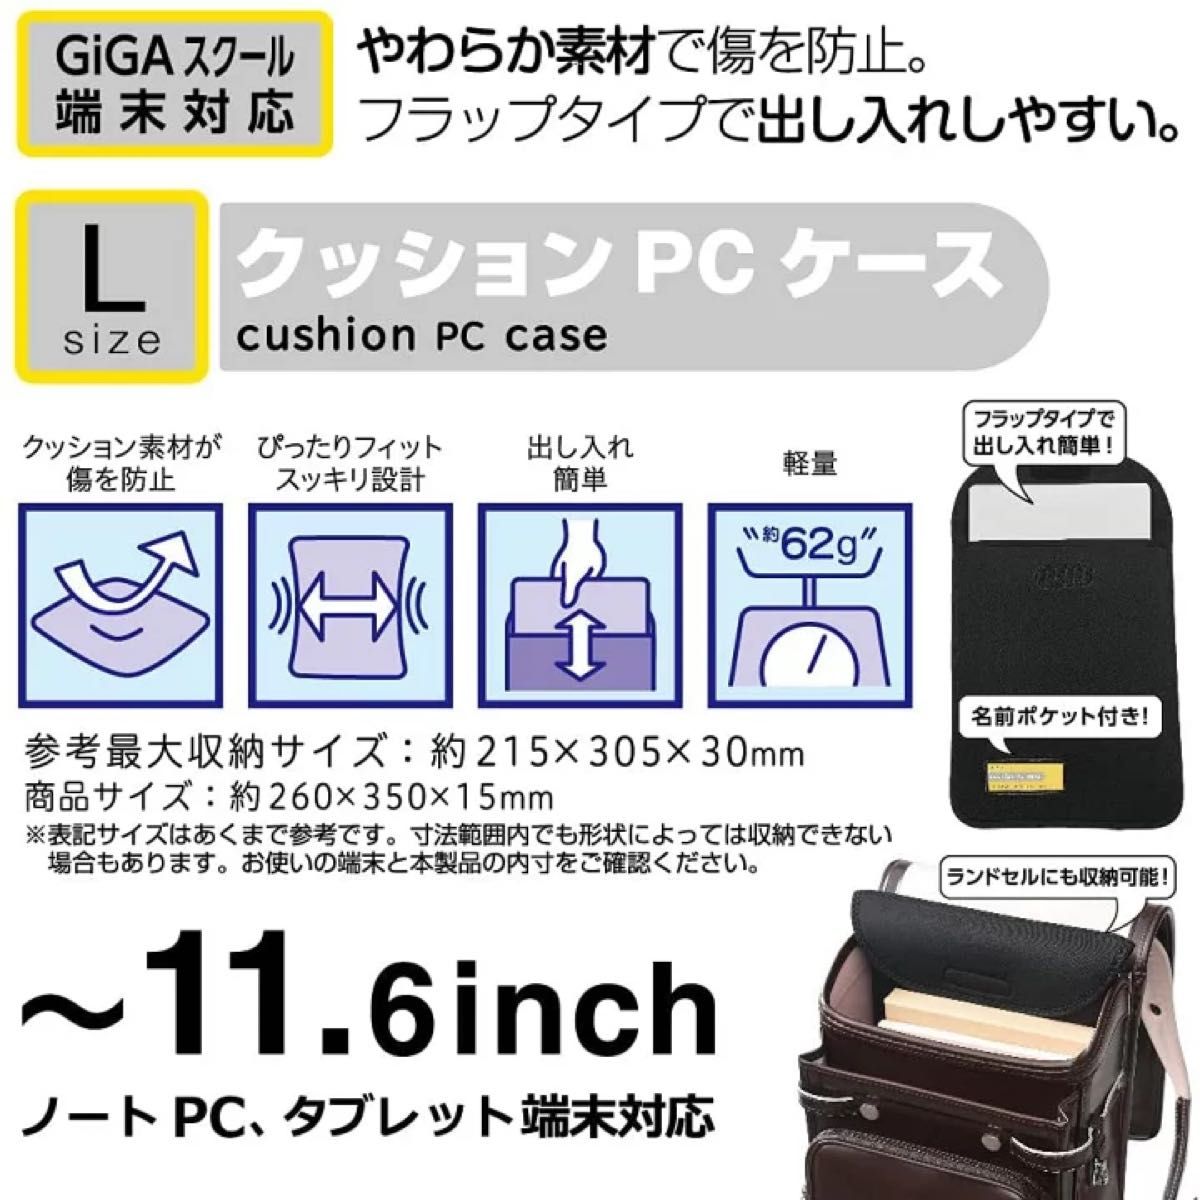 クッション PCケース L GIGA スクール端末 対応 11.6インチ ブラック リヒトラブ ( Lihit lab. )